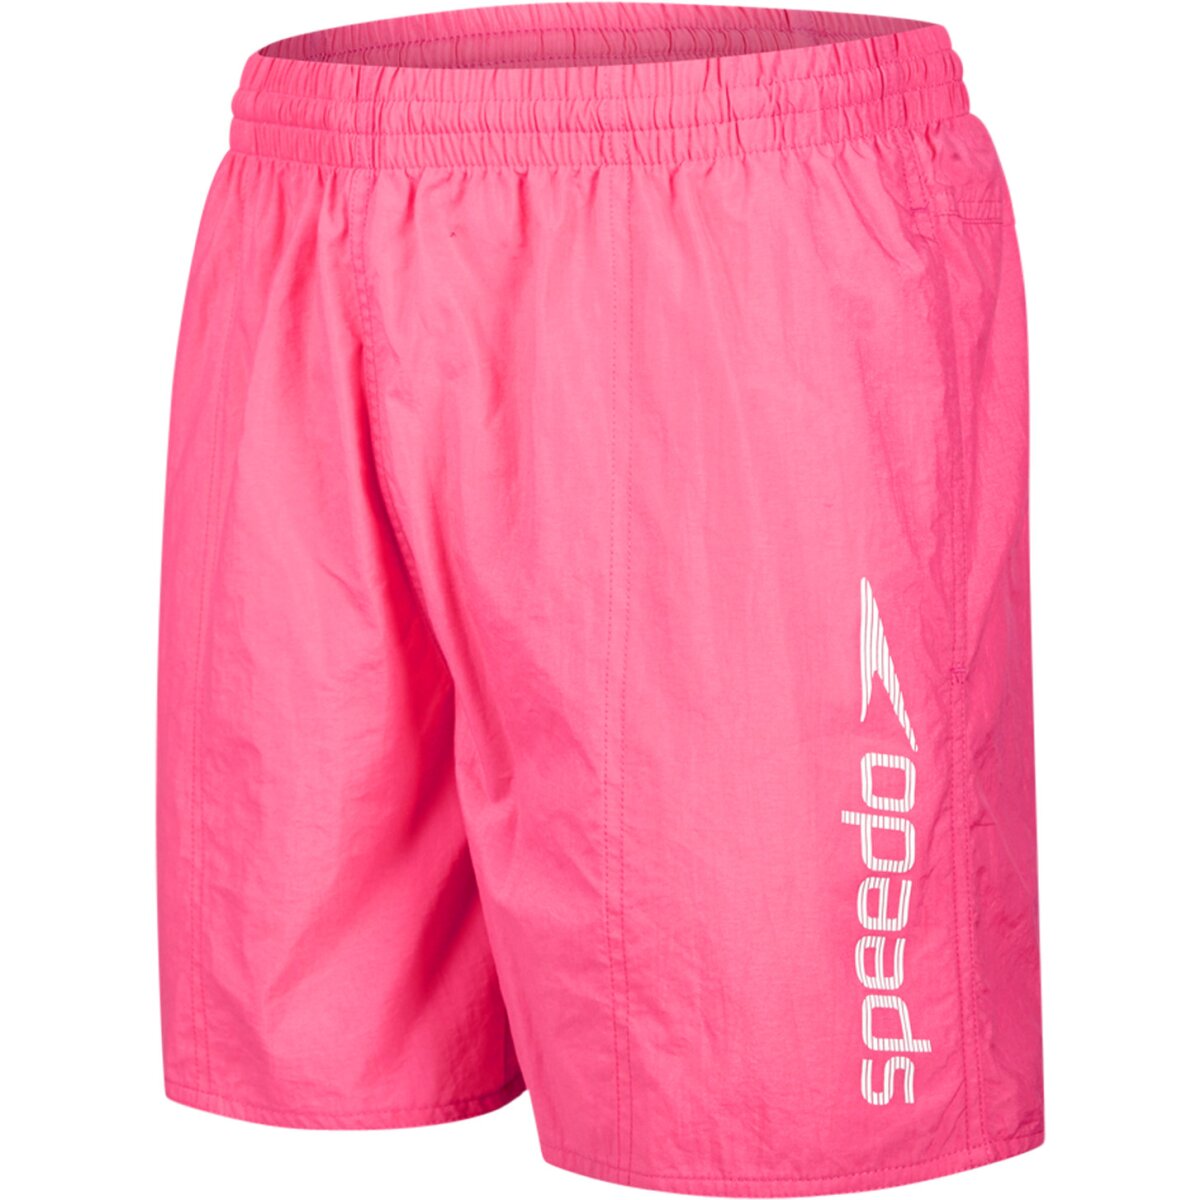 Speedo Badeshorts Mens Scope 16 Swim Shorts Beach Short S-XXL - Pink,